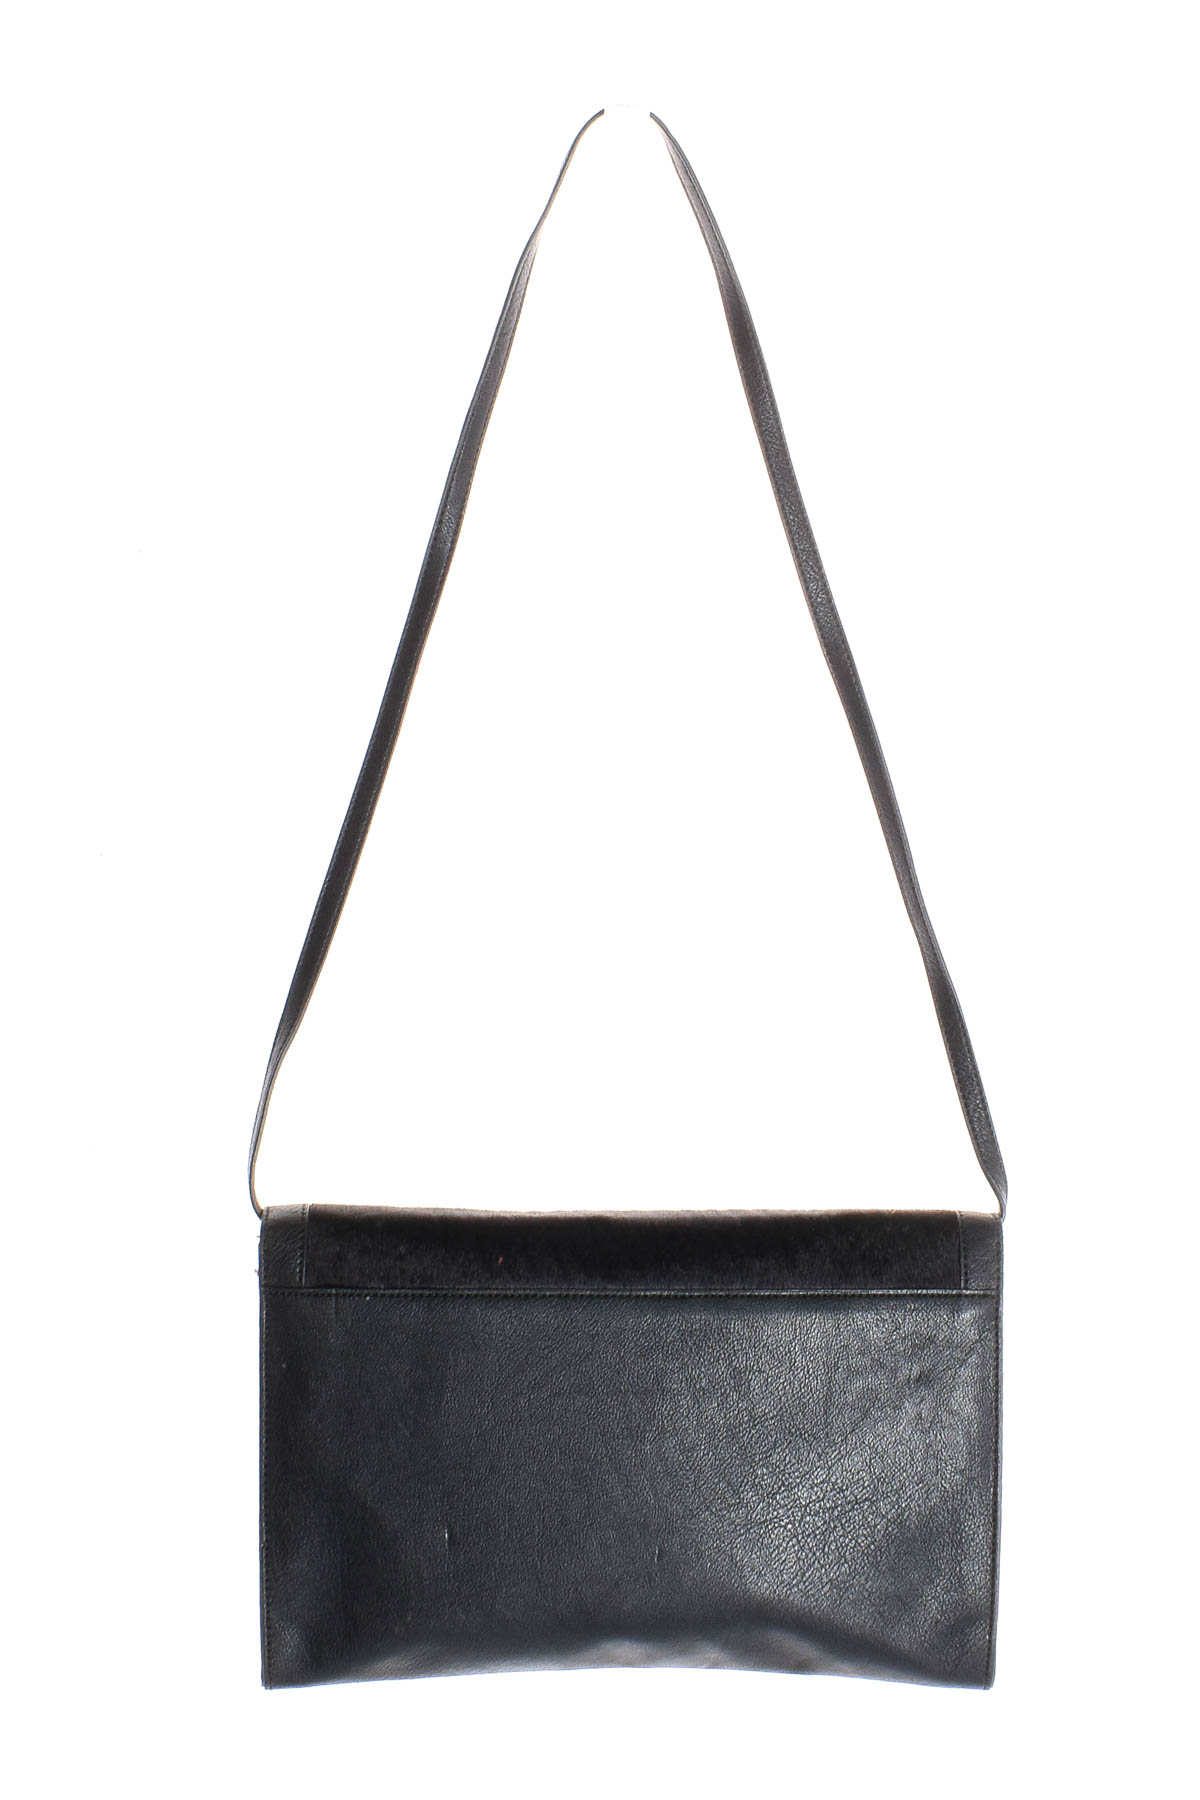 Γυναικεία τσάντα - ESPRIT - 1